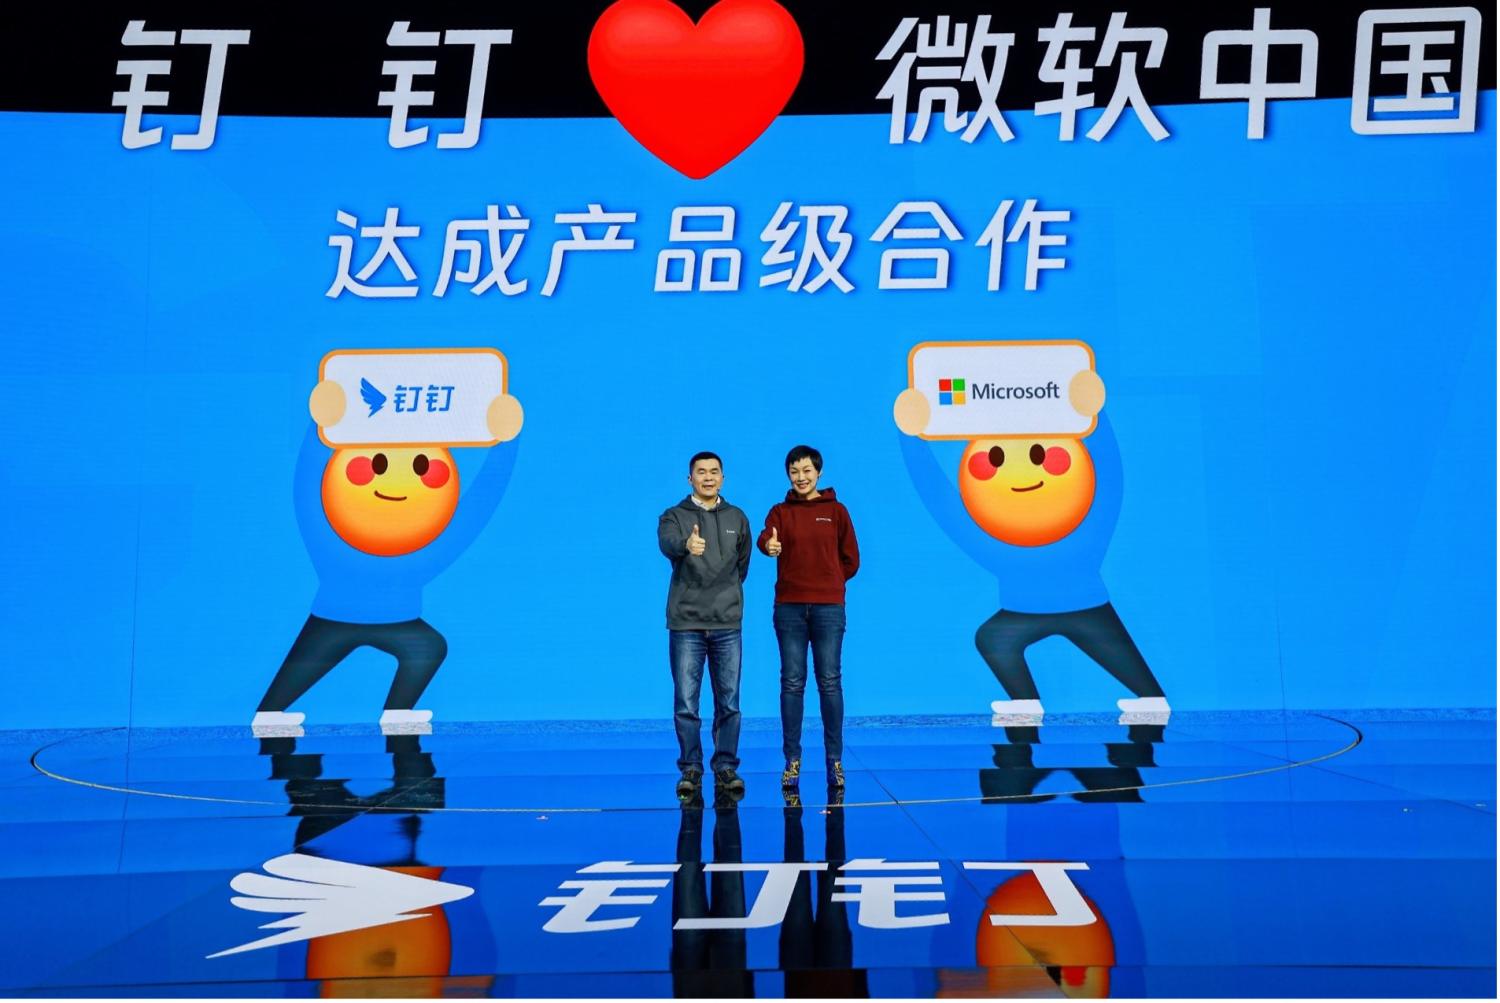 釘釘和微軟中國宣佈達成產品級合作，圖右為微軟中國區總裁原欣，圖左為釘釘總裁葉軍。